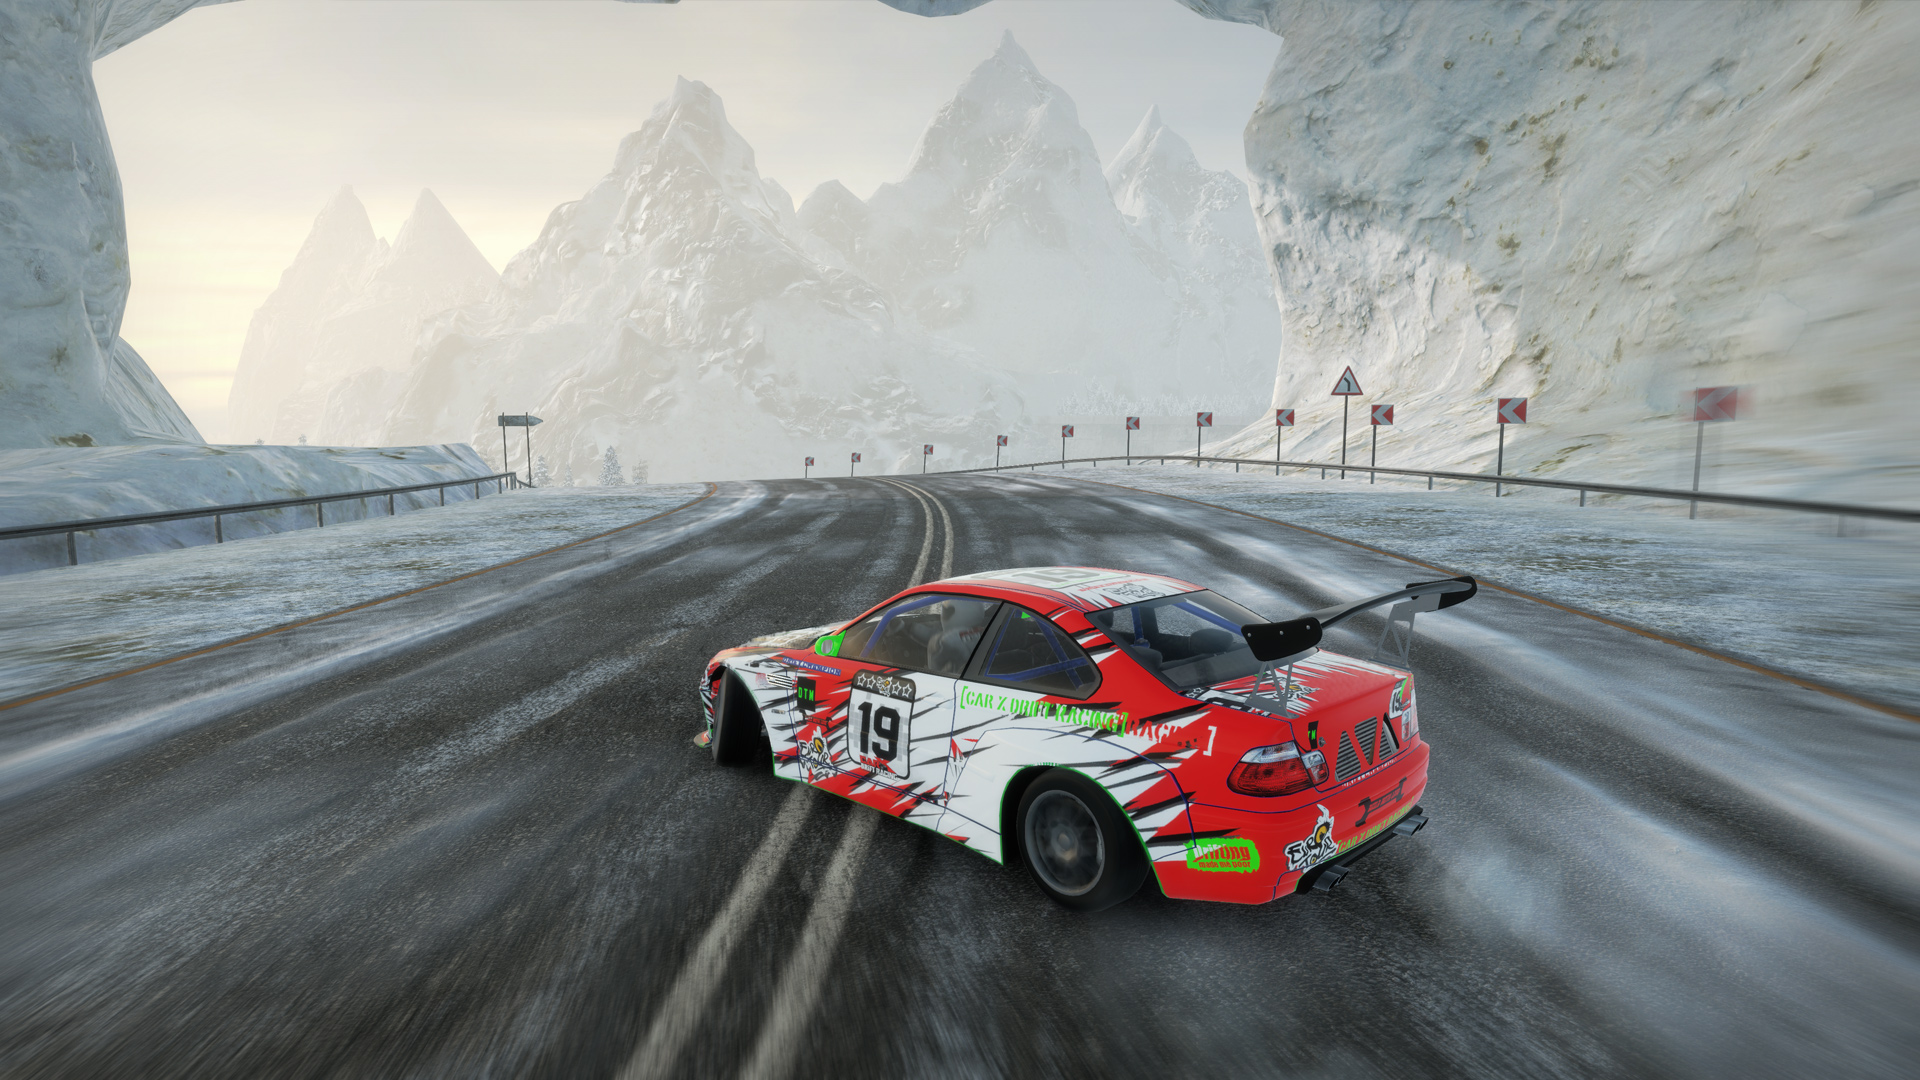 CarX Drift Racing [STEAM] Offline